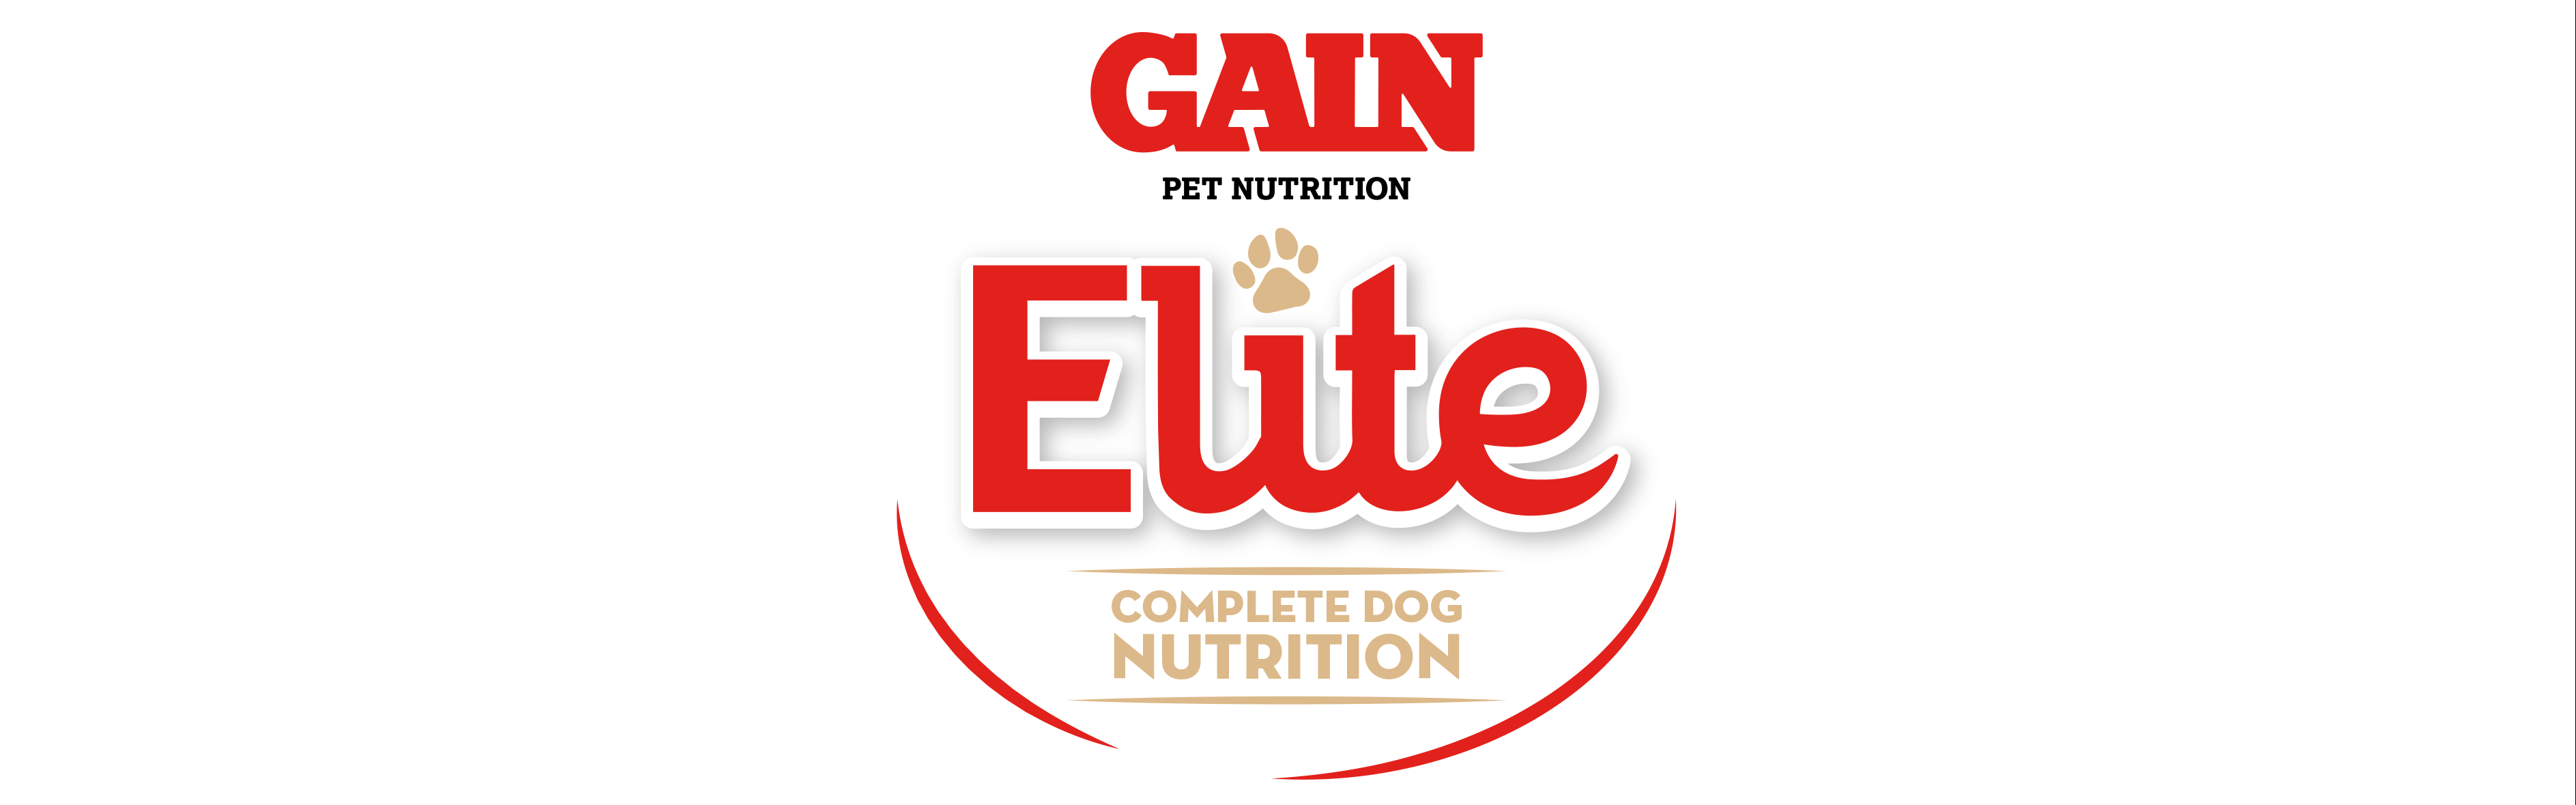 gain elite logo